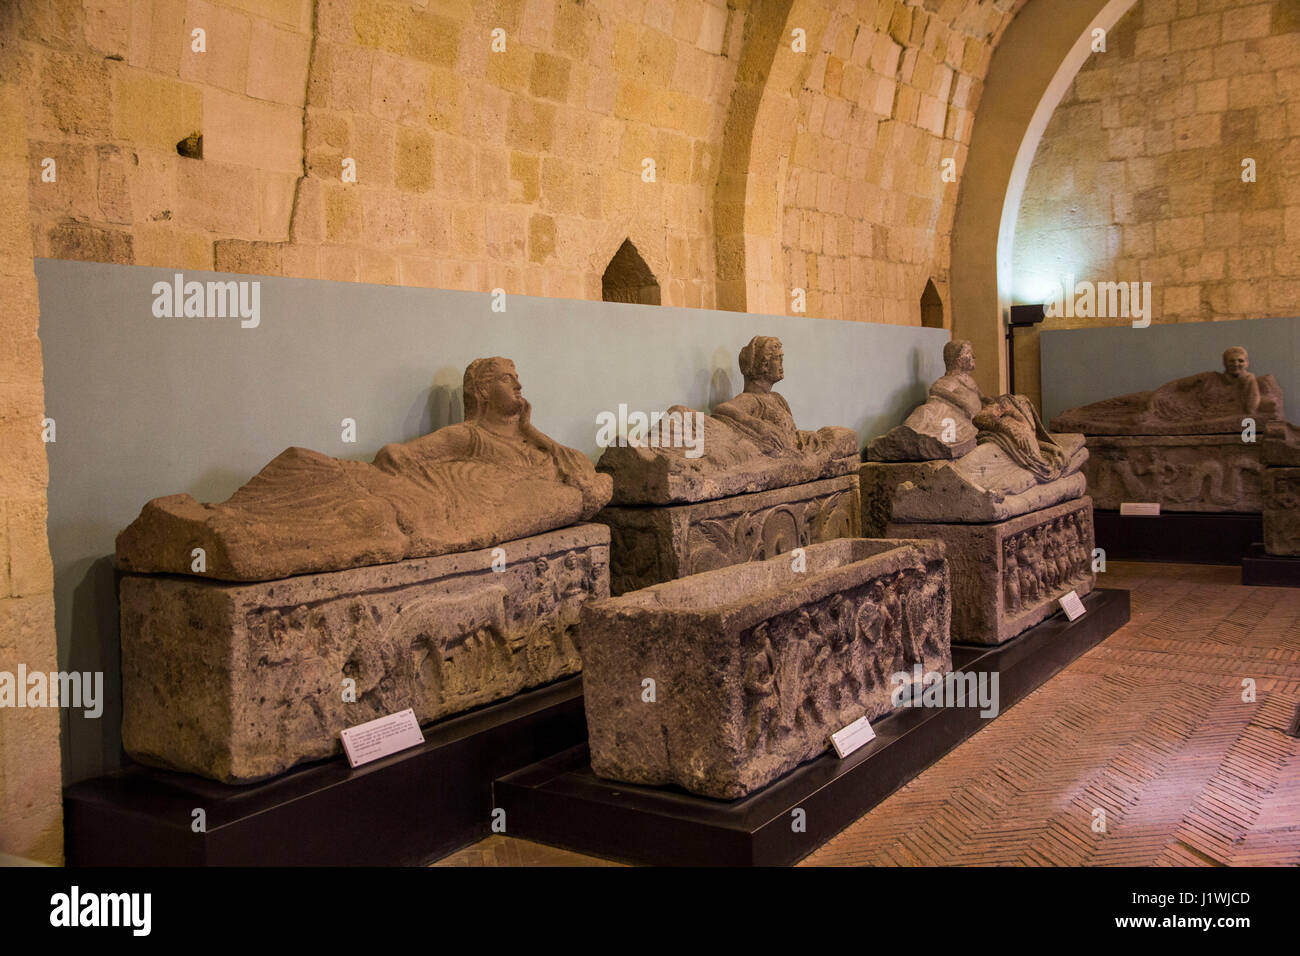 En el Museo Arqueológico Nacional de Tarquinia, los visitantes pueden examinar de cerca una espléndida colección de mármol y alabastro sarcófagos etruscos. Foto de stock